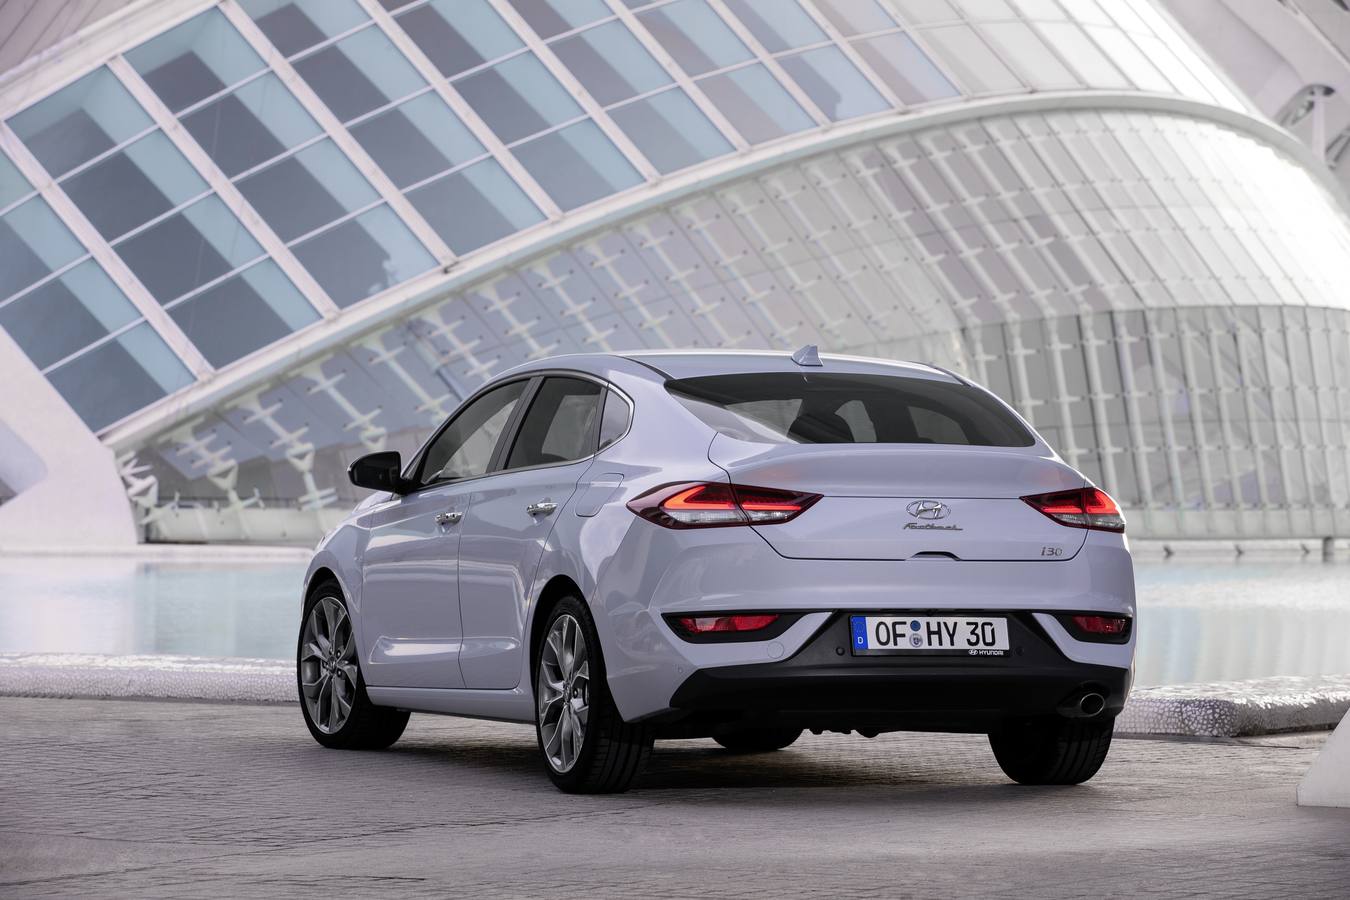 Hyundai añade a la gama i30 la versión Fastback, una versión más larga que se caracteriza por el nuevo diseño de la parte posterior. Se vende con la posibilidad de dos motores de gasolina, a partir de 16.165 euros.